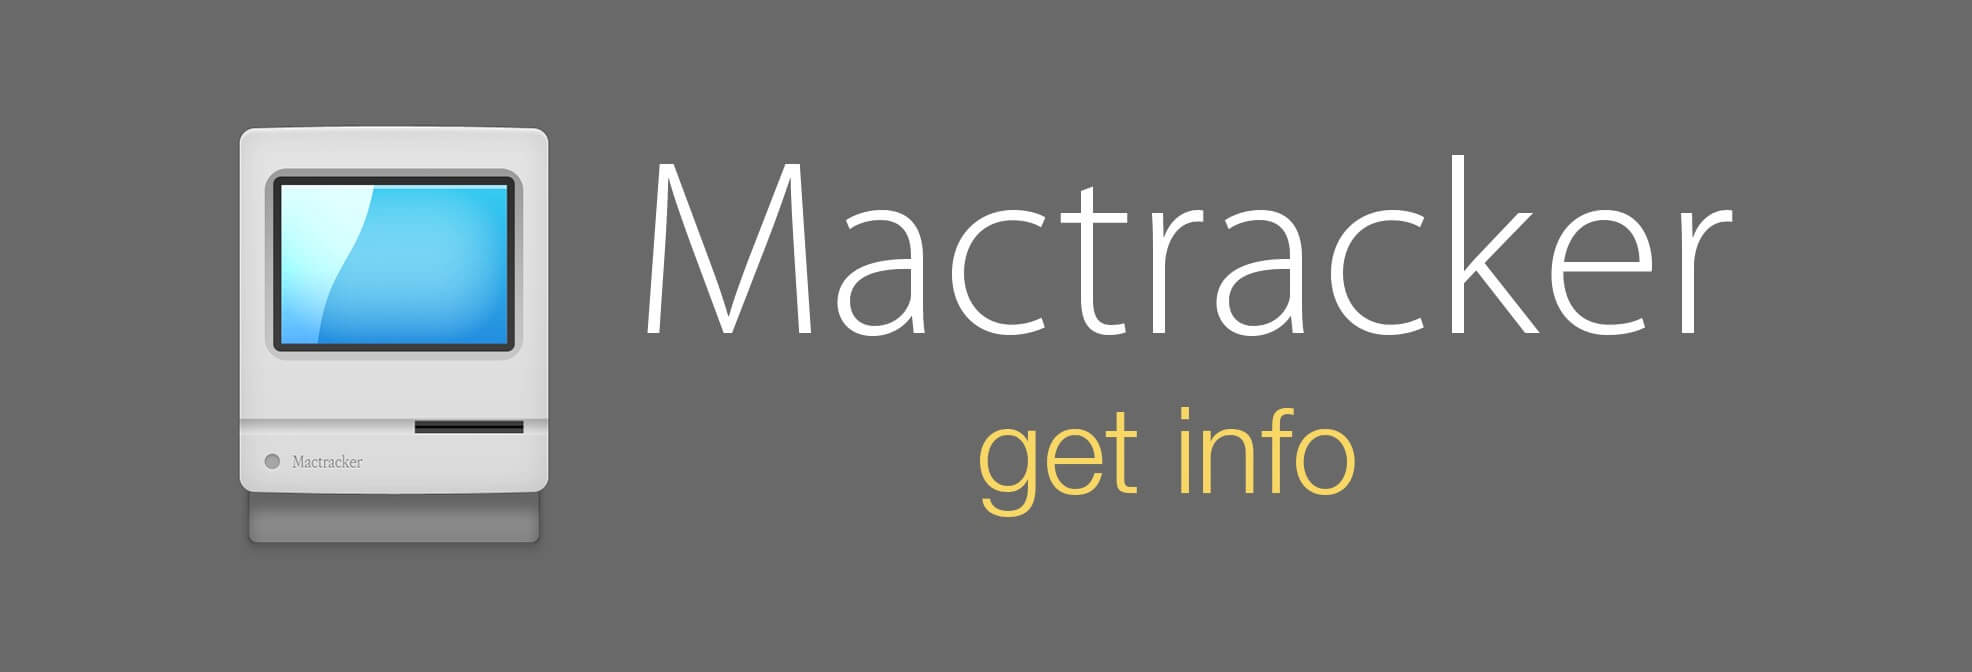 mactracker app